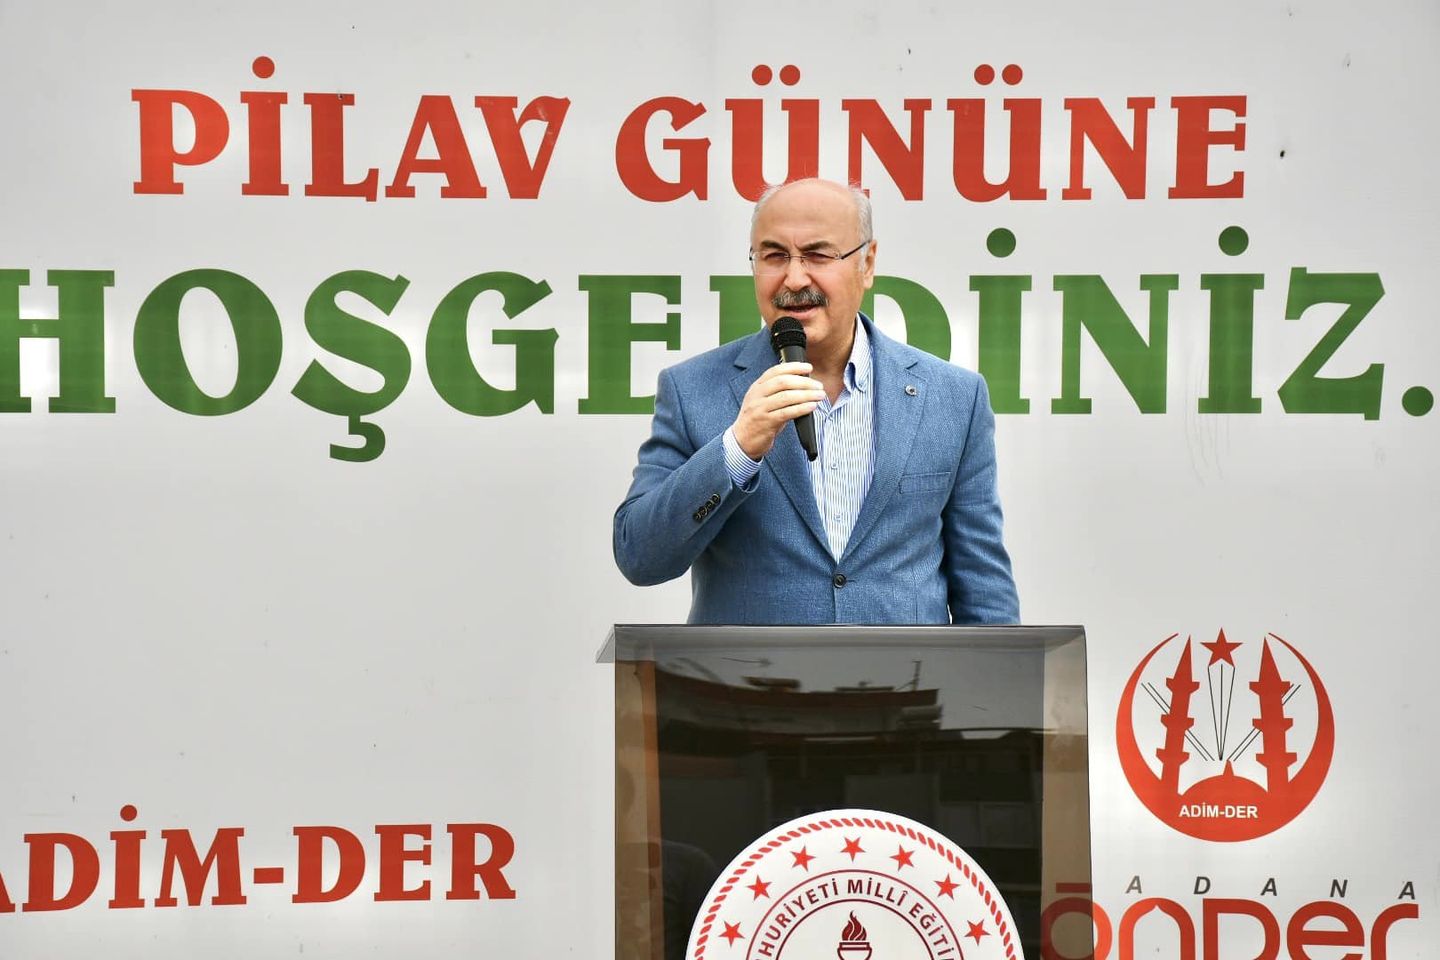 Adana Valisi Yavuz Selim Köşger, Pilav Günü ve Mezunlar Buluşmasına Katıldı